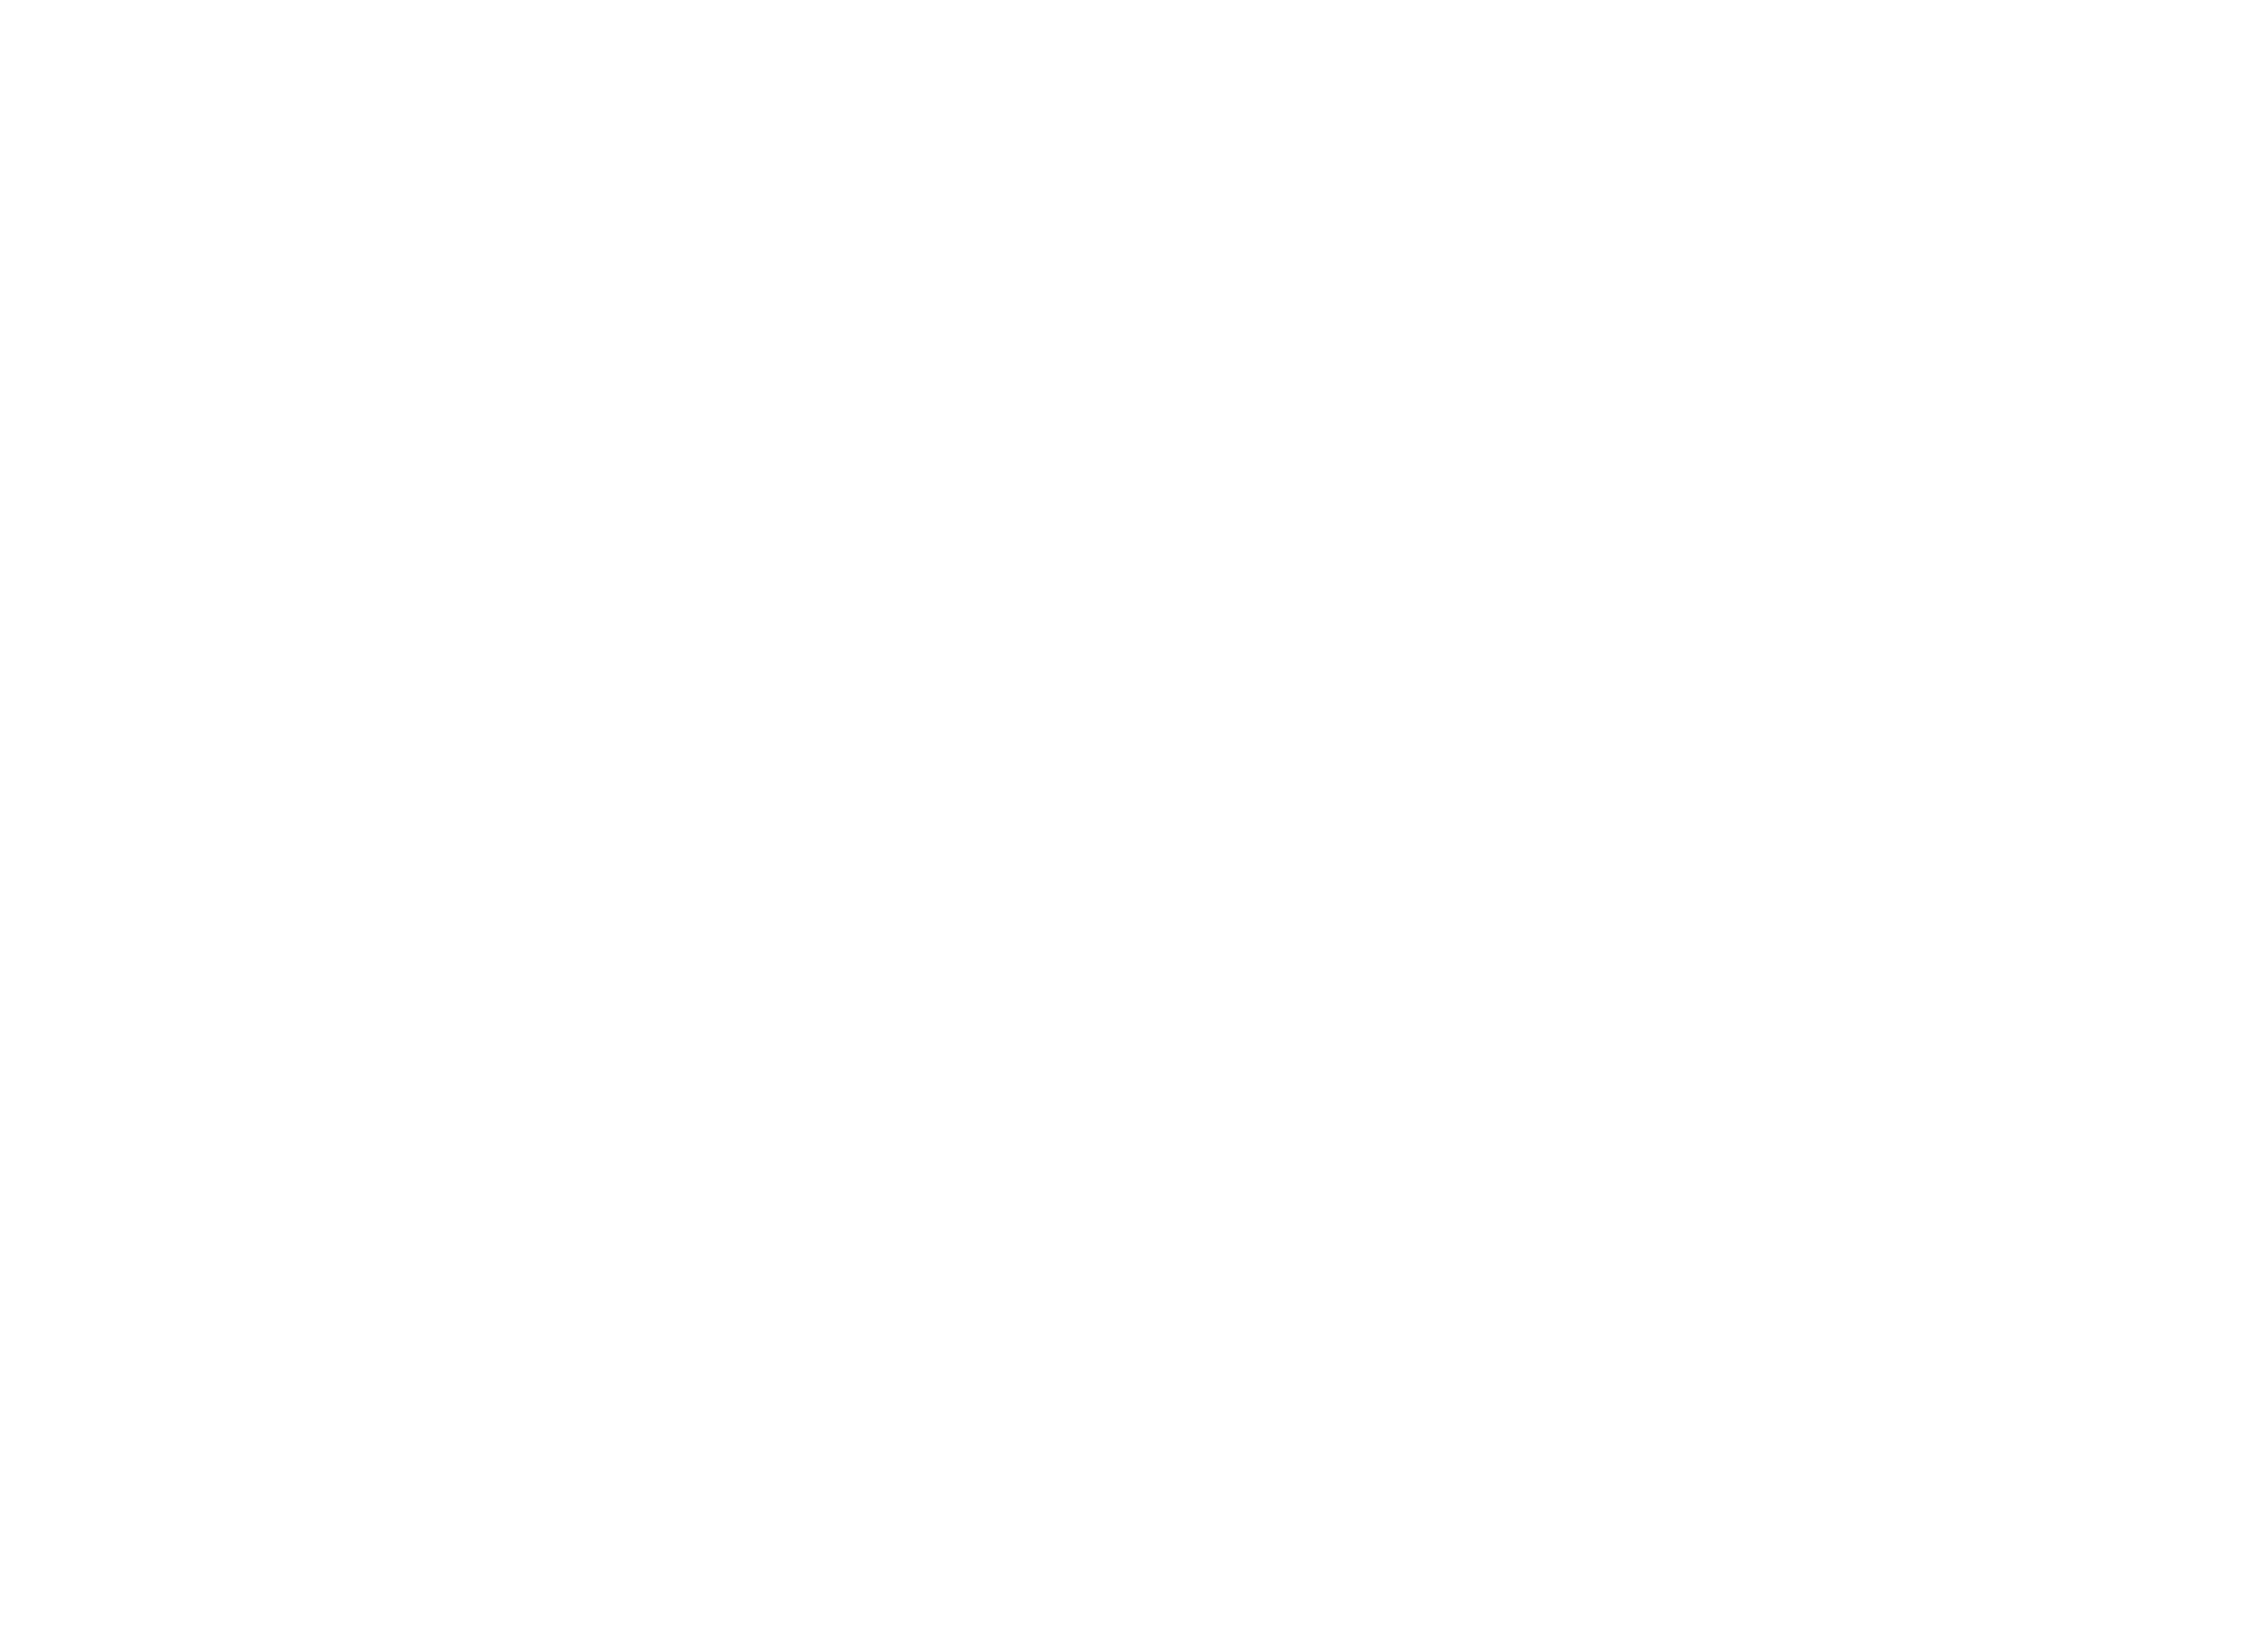 The Sheet Society